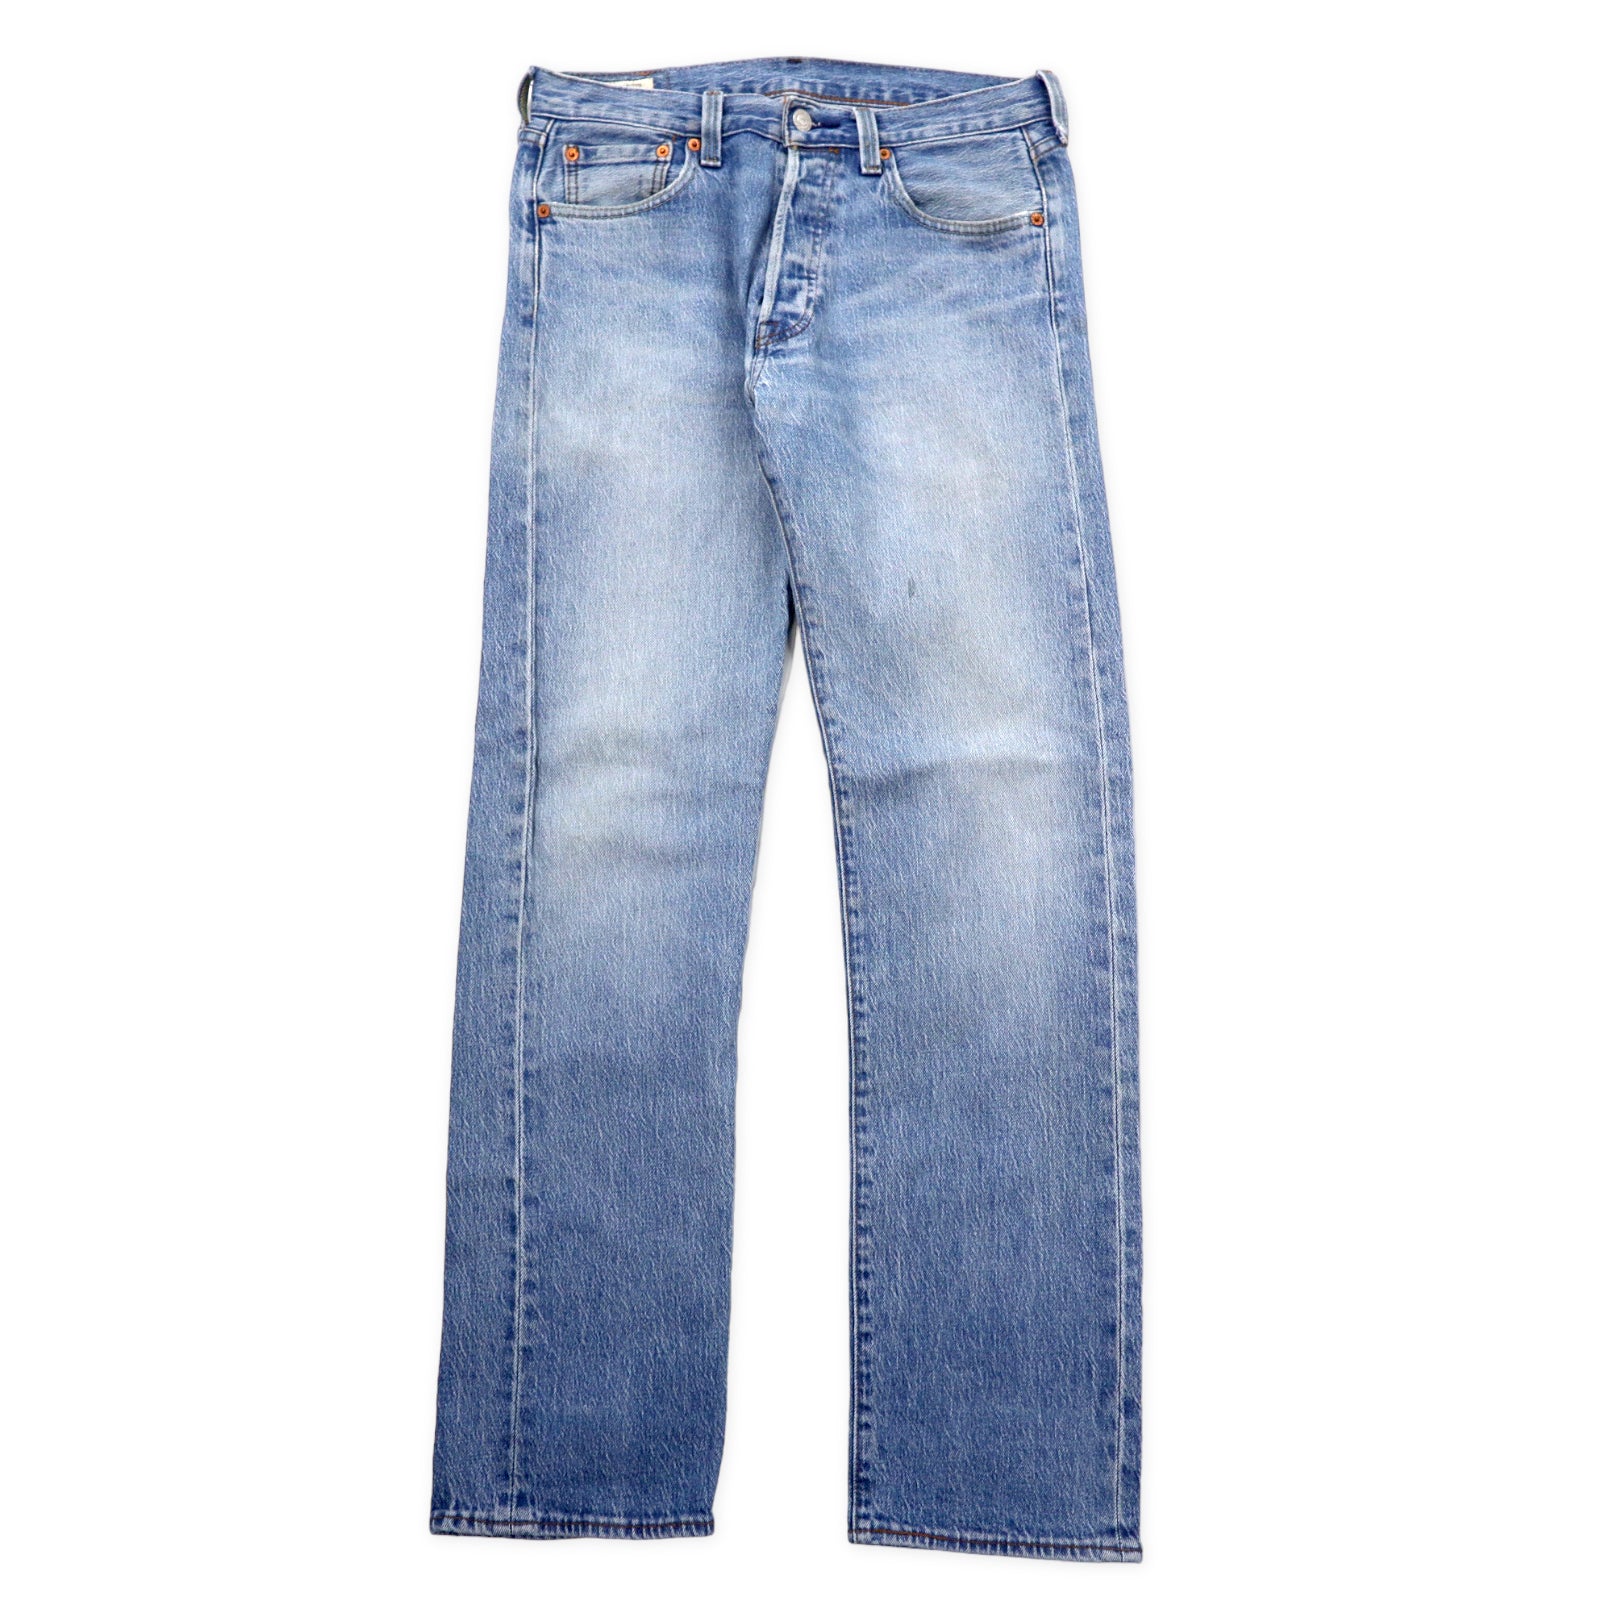 Levi's Premium 501 Big E 501 Original Fit Jeans Denim Pants 30 